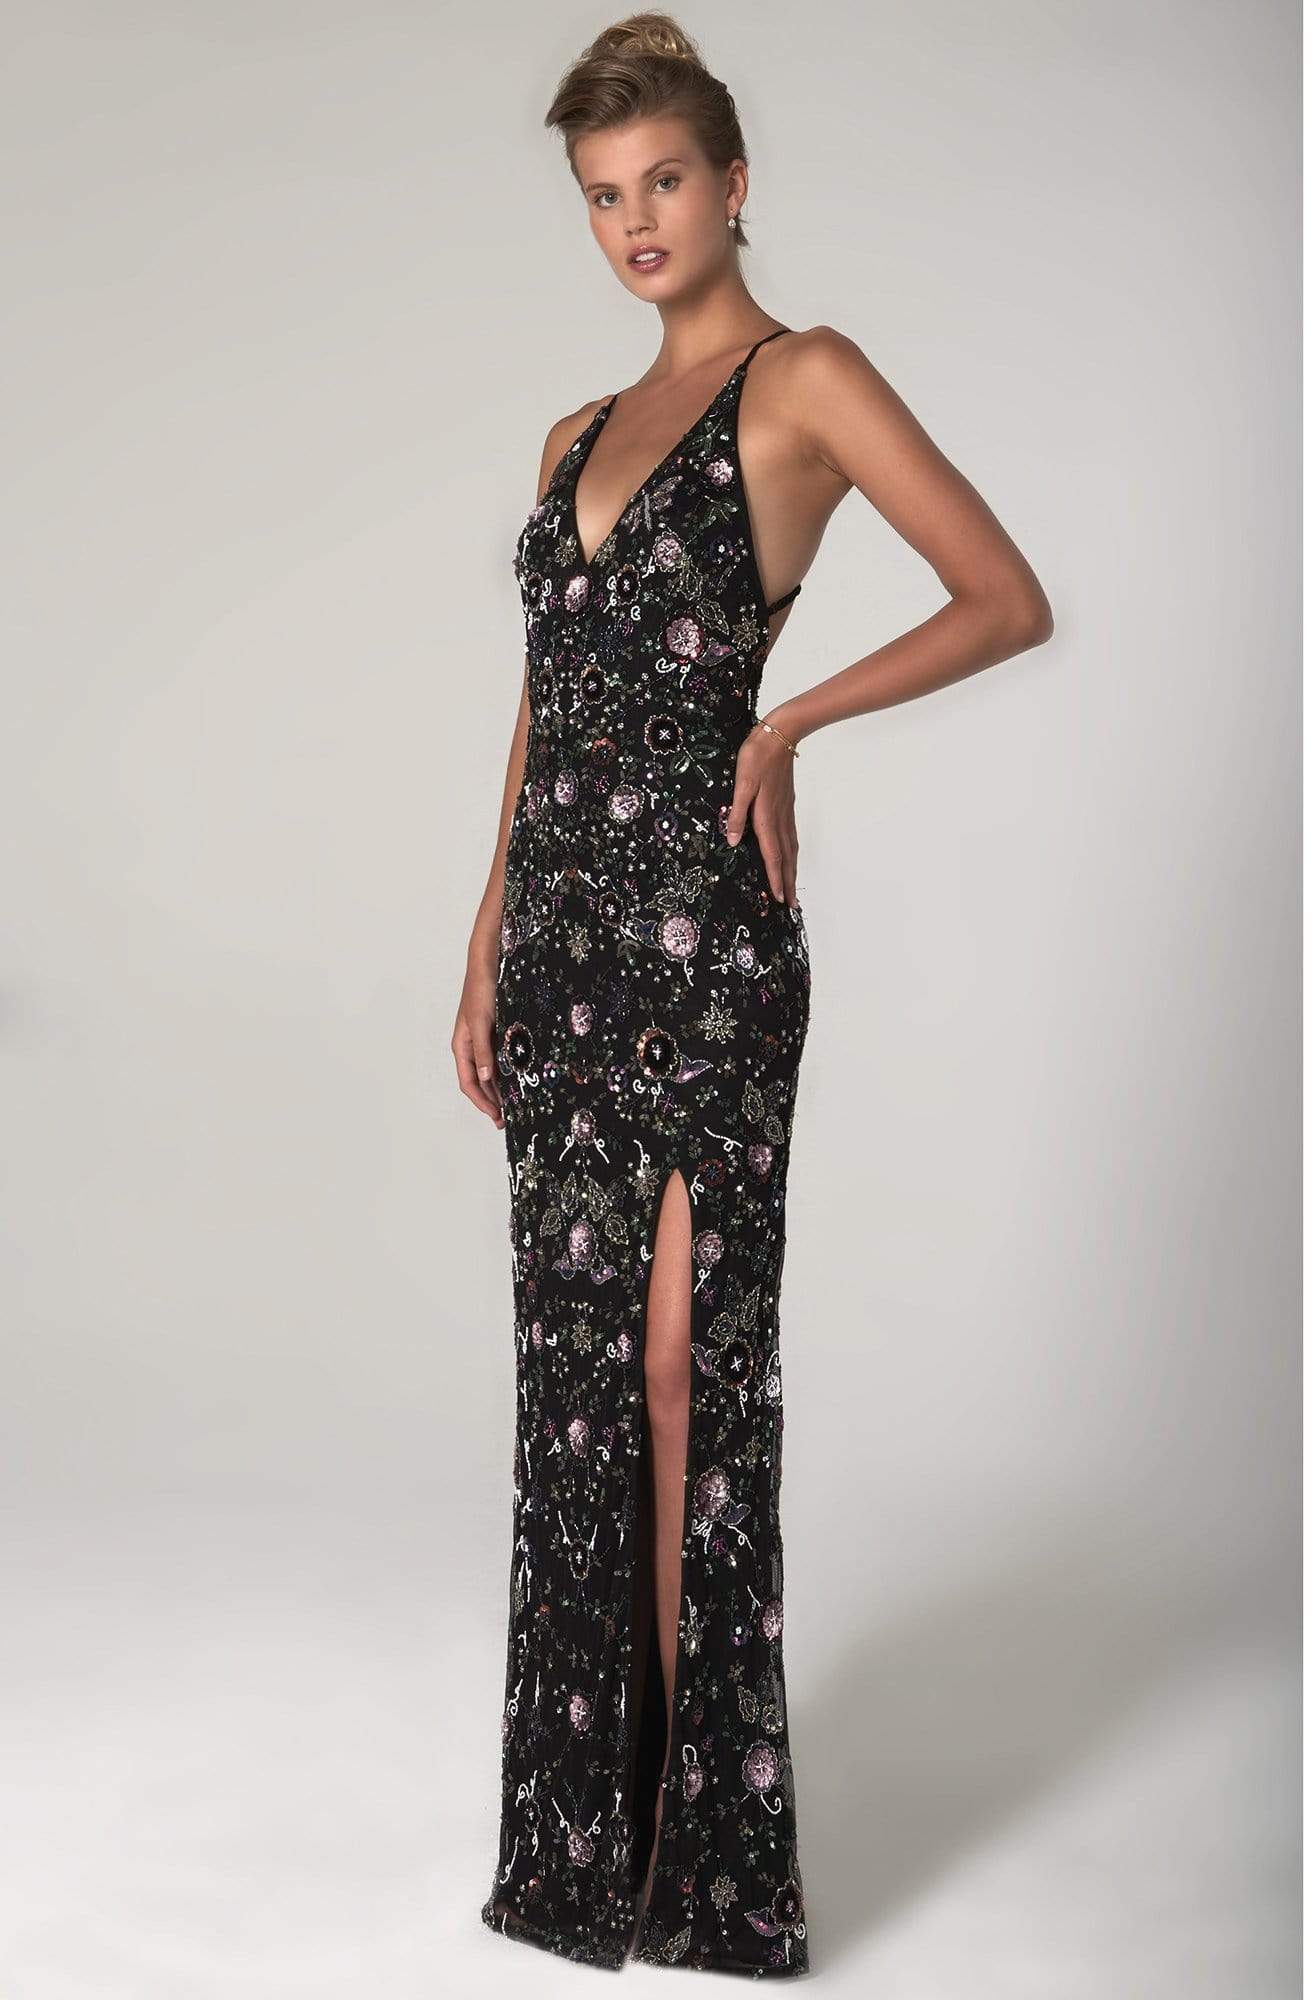 SCALA - 60129 Floral V-Neck Column Dress Prom Dresses 00 / Black